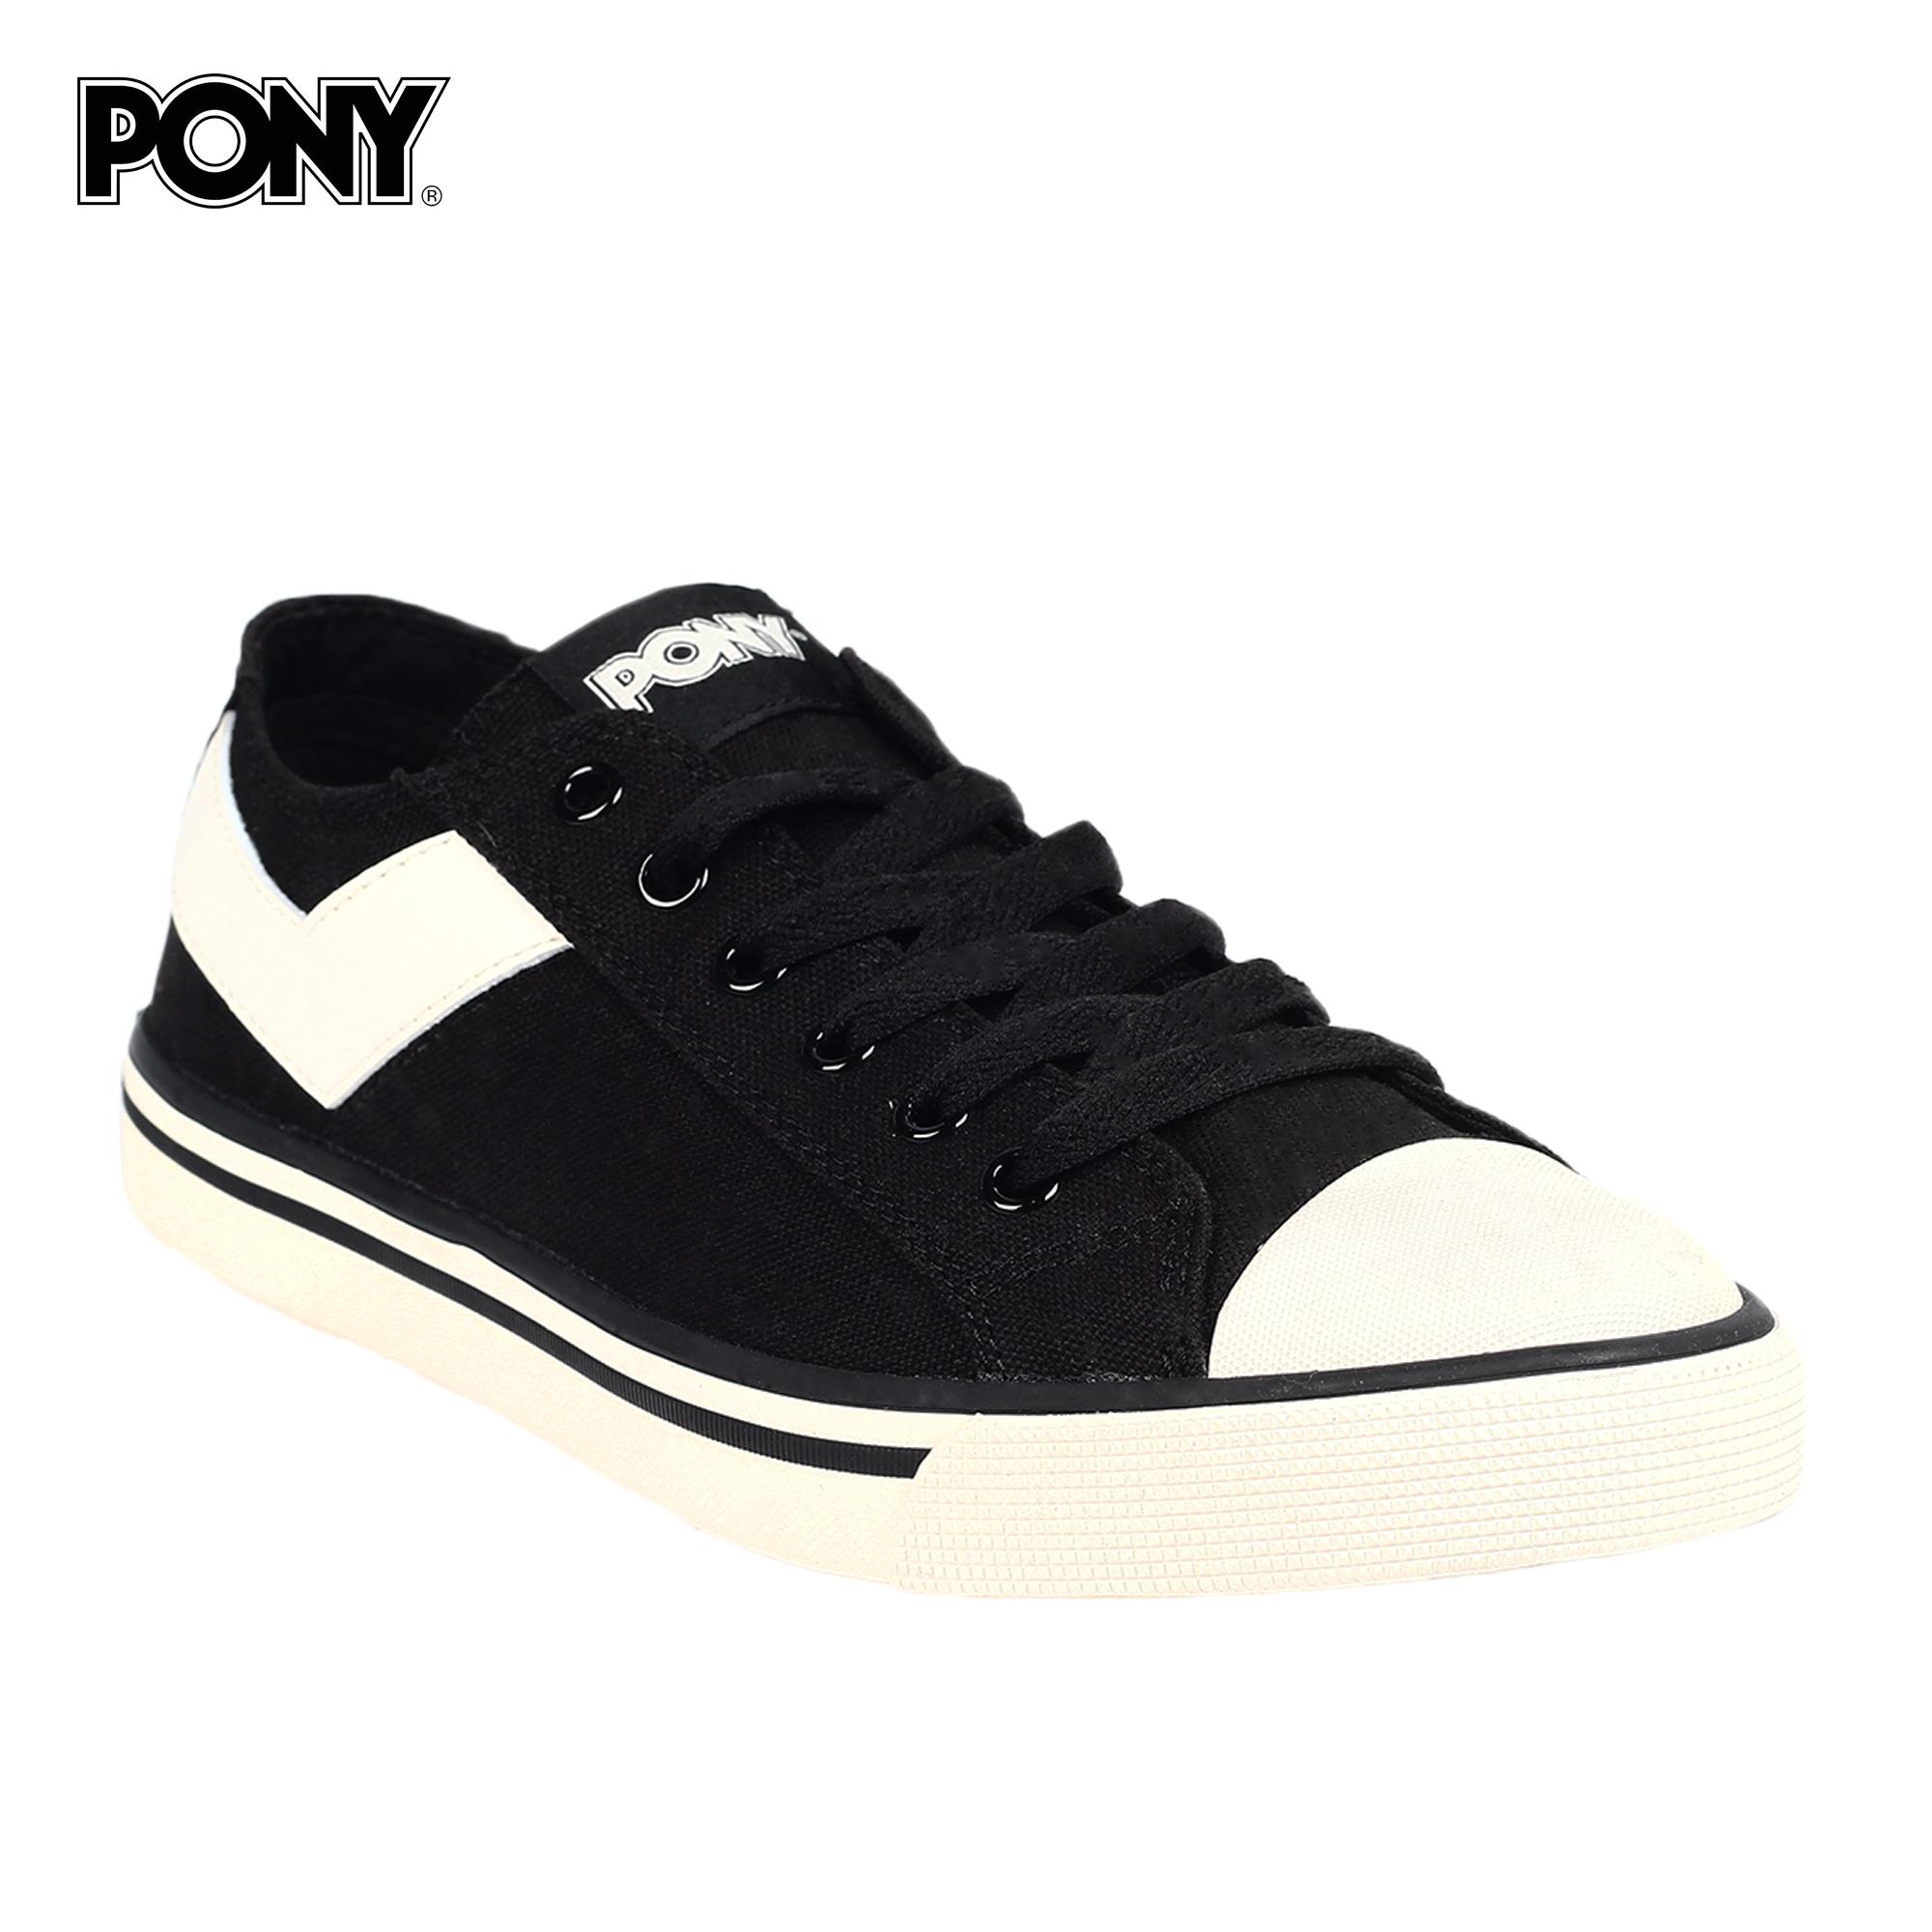 pony shoes for ladies price